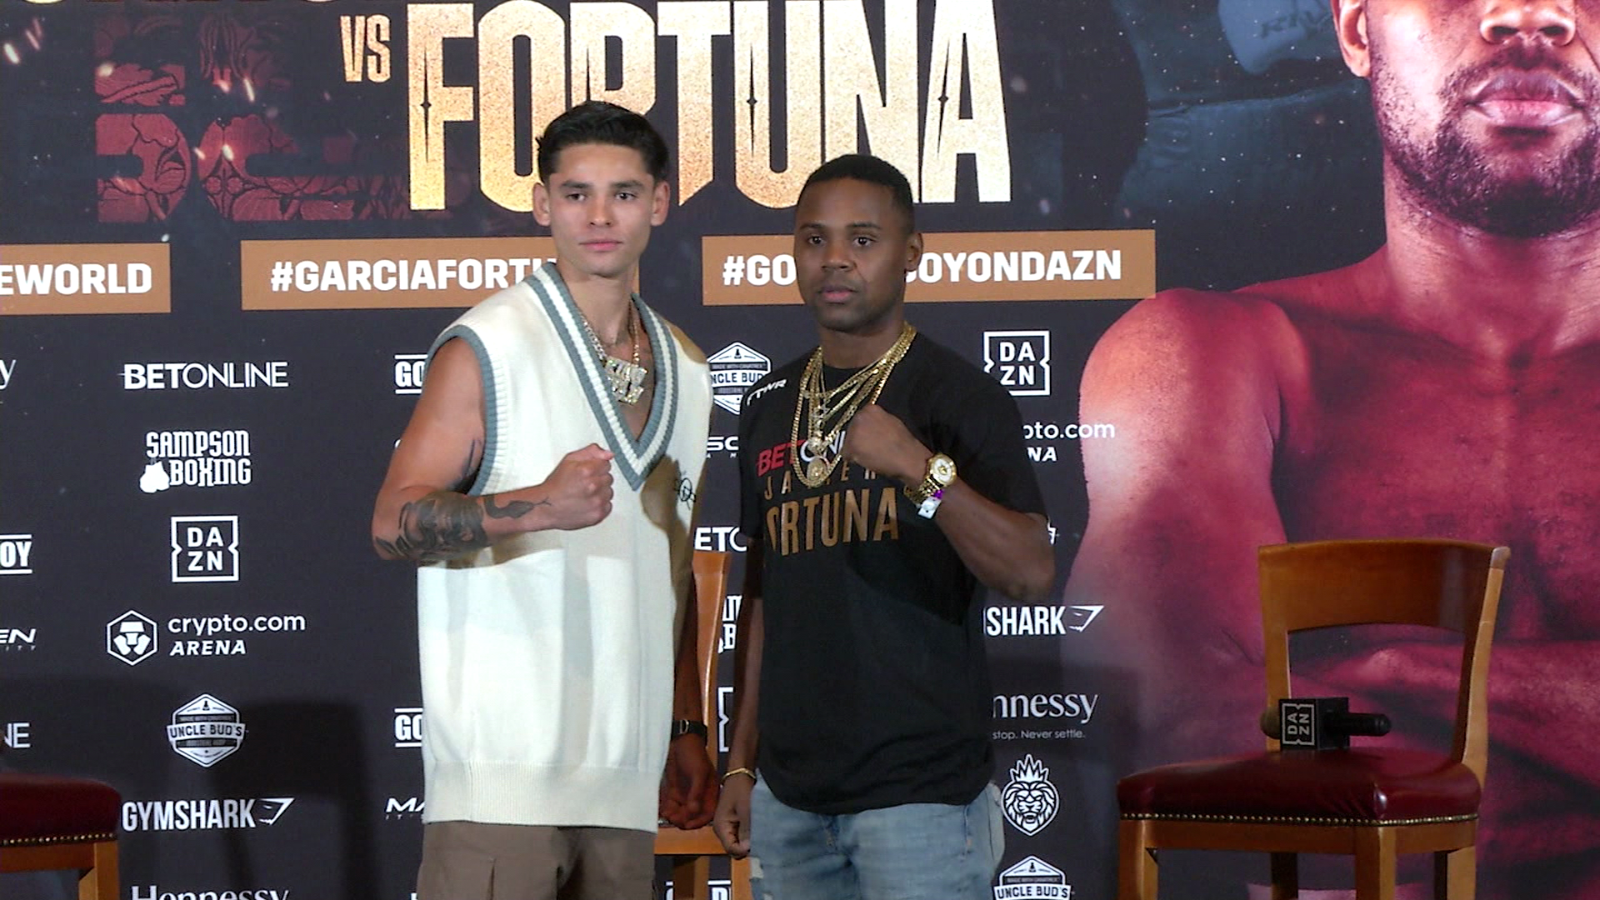 Boxeo: todo listo para el enfrentamiento entre Ryan García y Javier
Fortuna